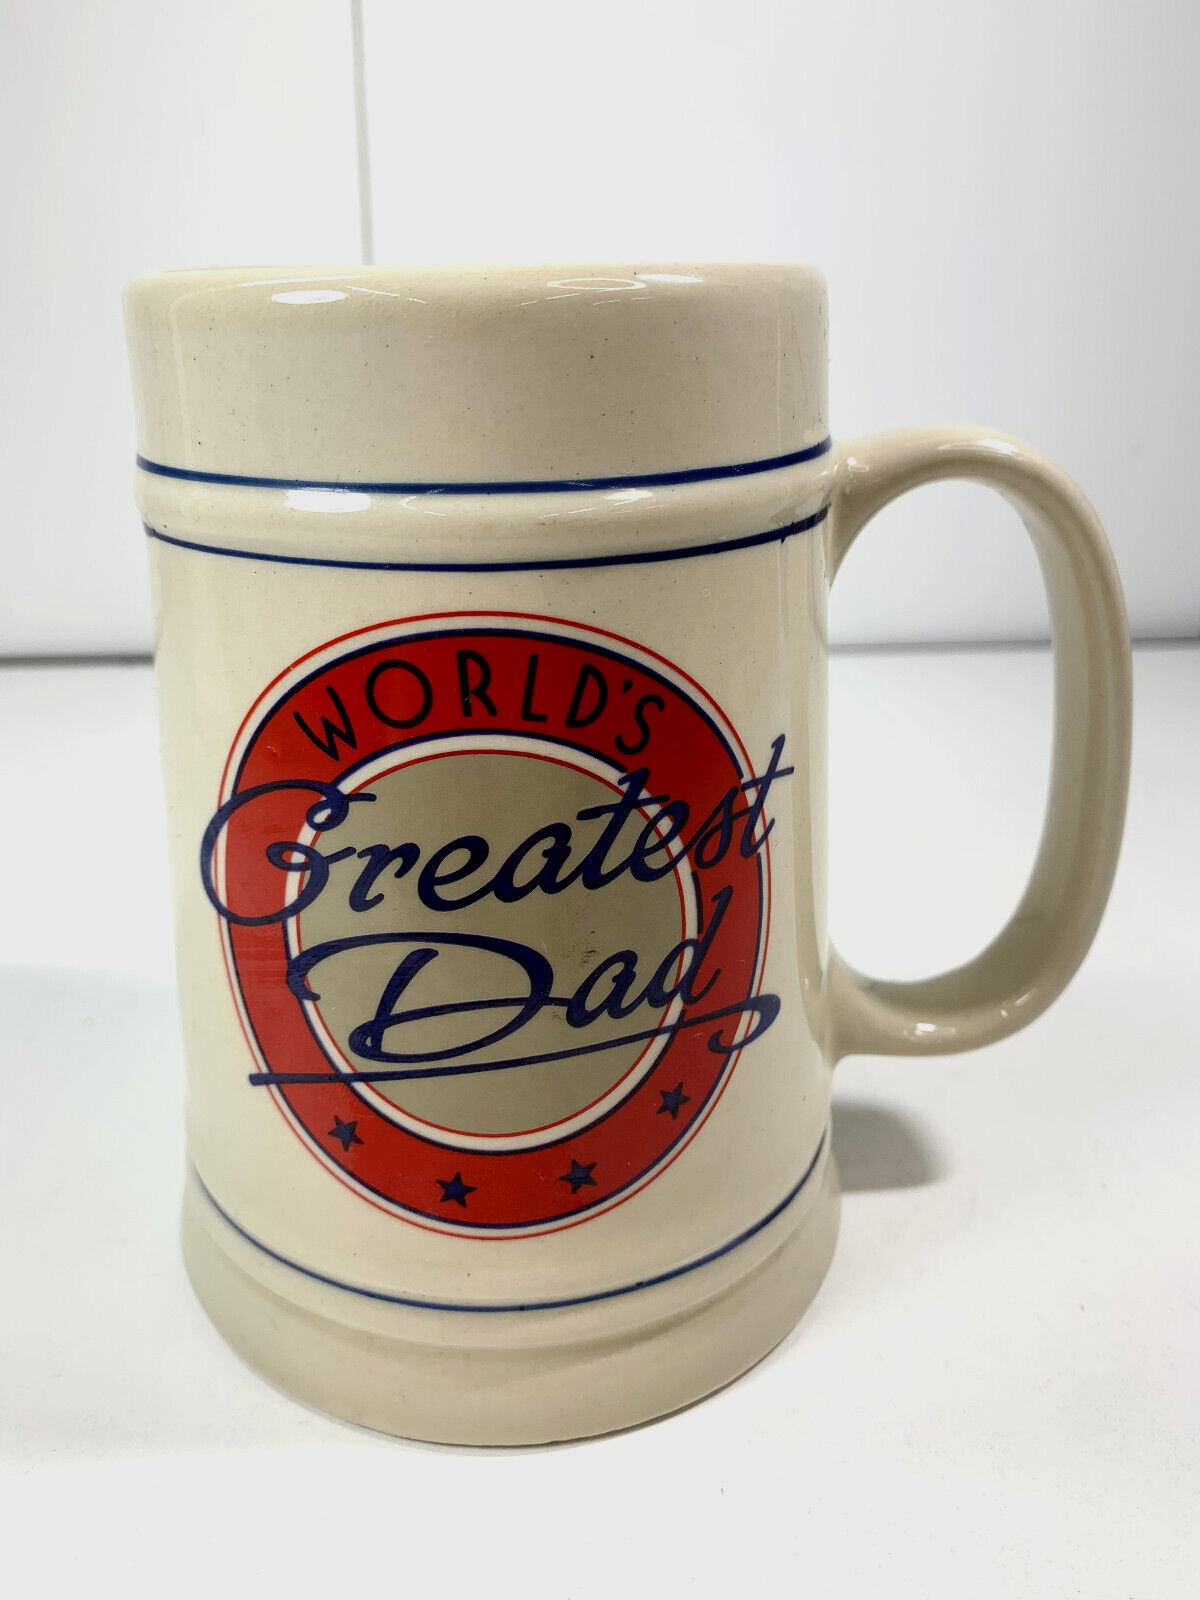 Worlds Greatest Dad Ceramic Beer Mug- Vintage Beige